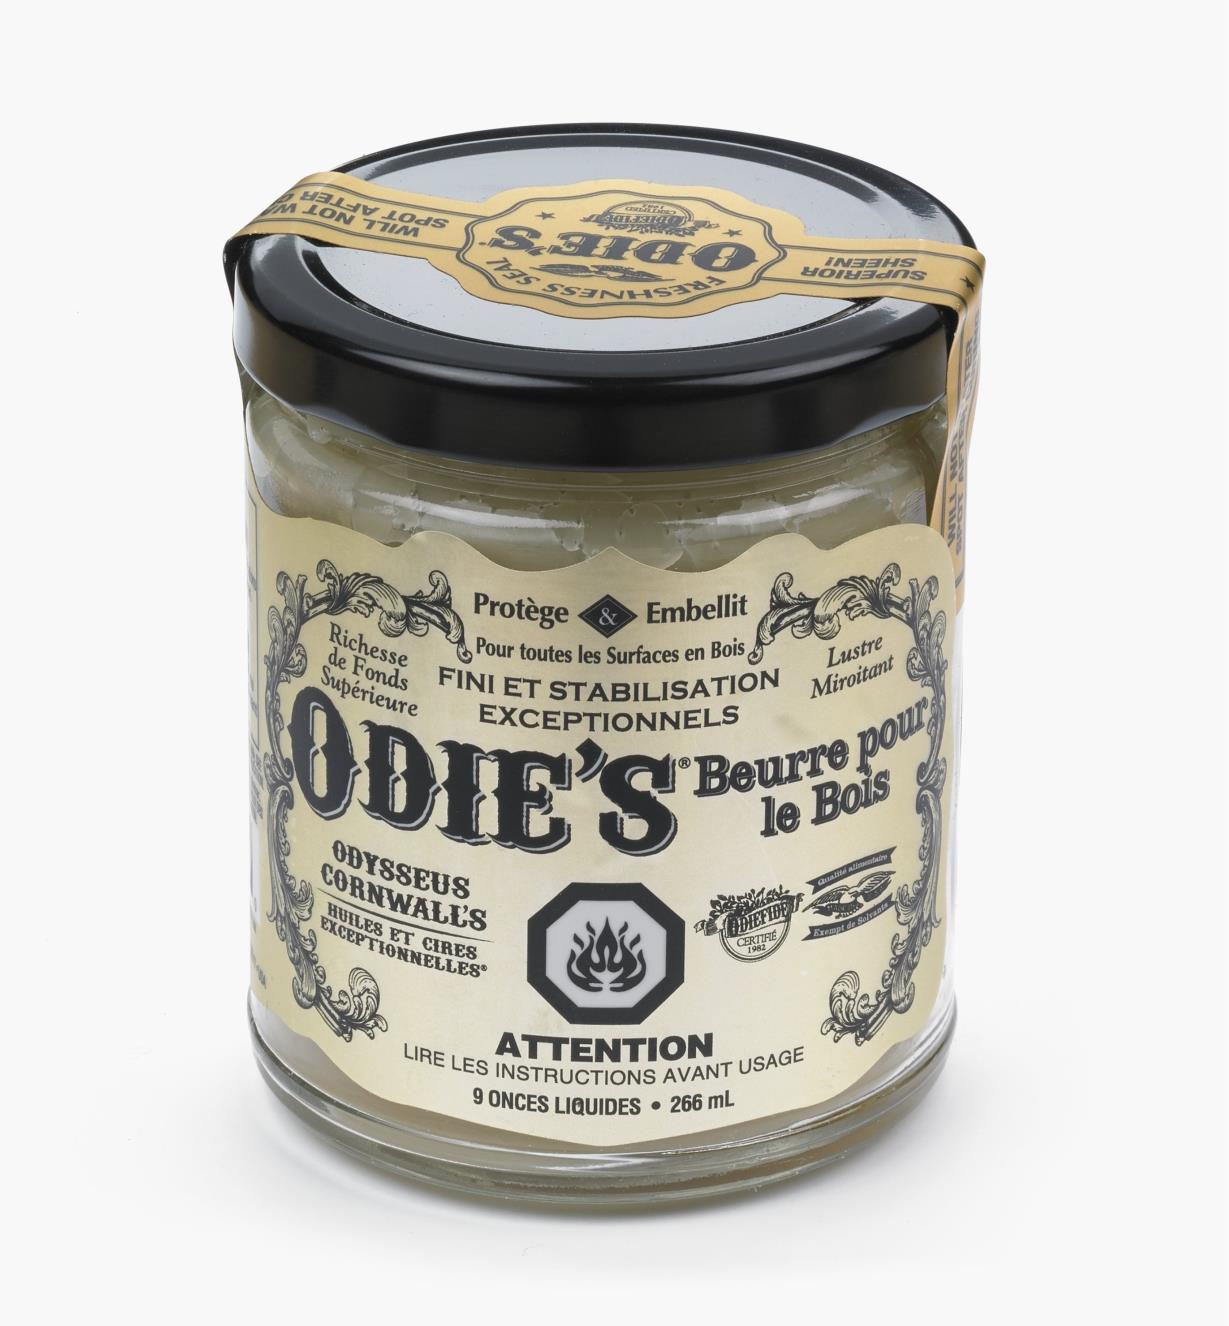 27K2604 - Beurre pour le bois Odie's, 9 oz (266 ml)